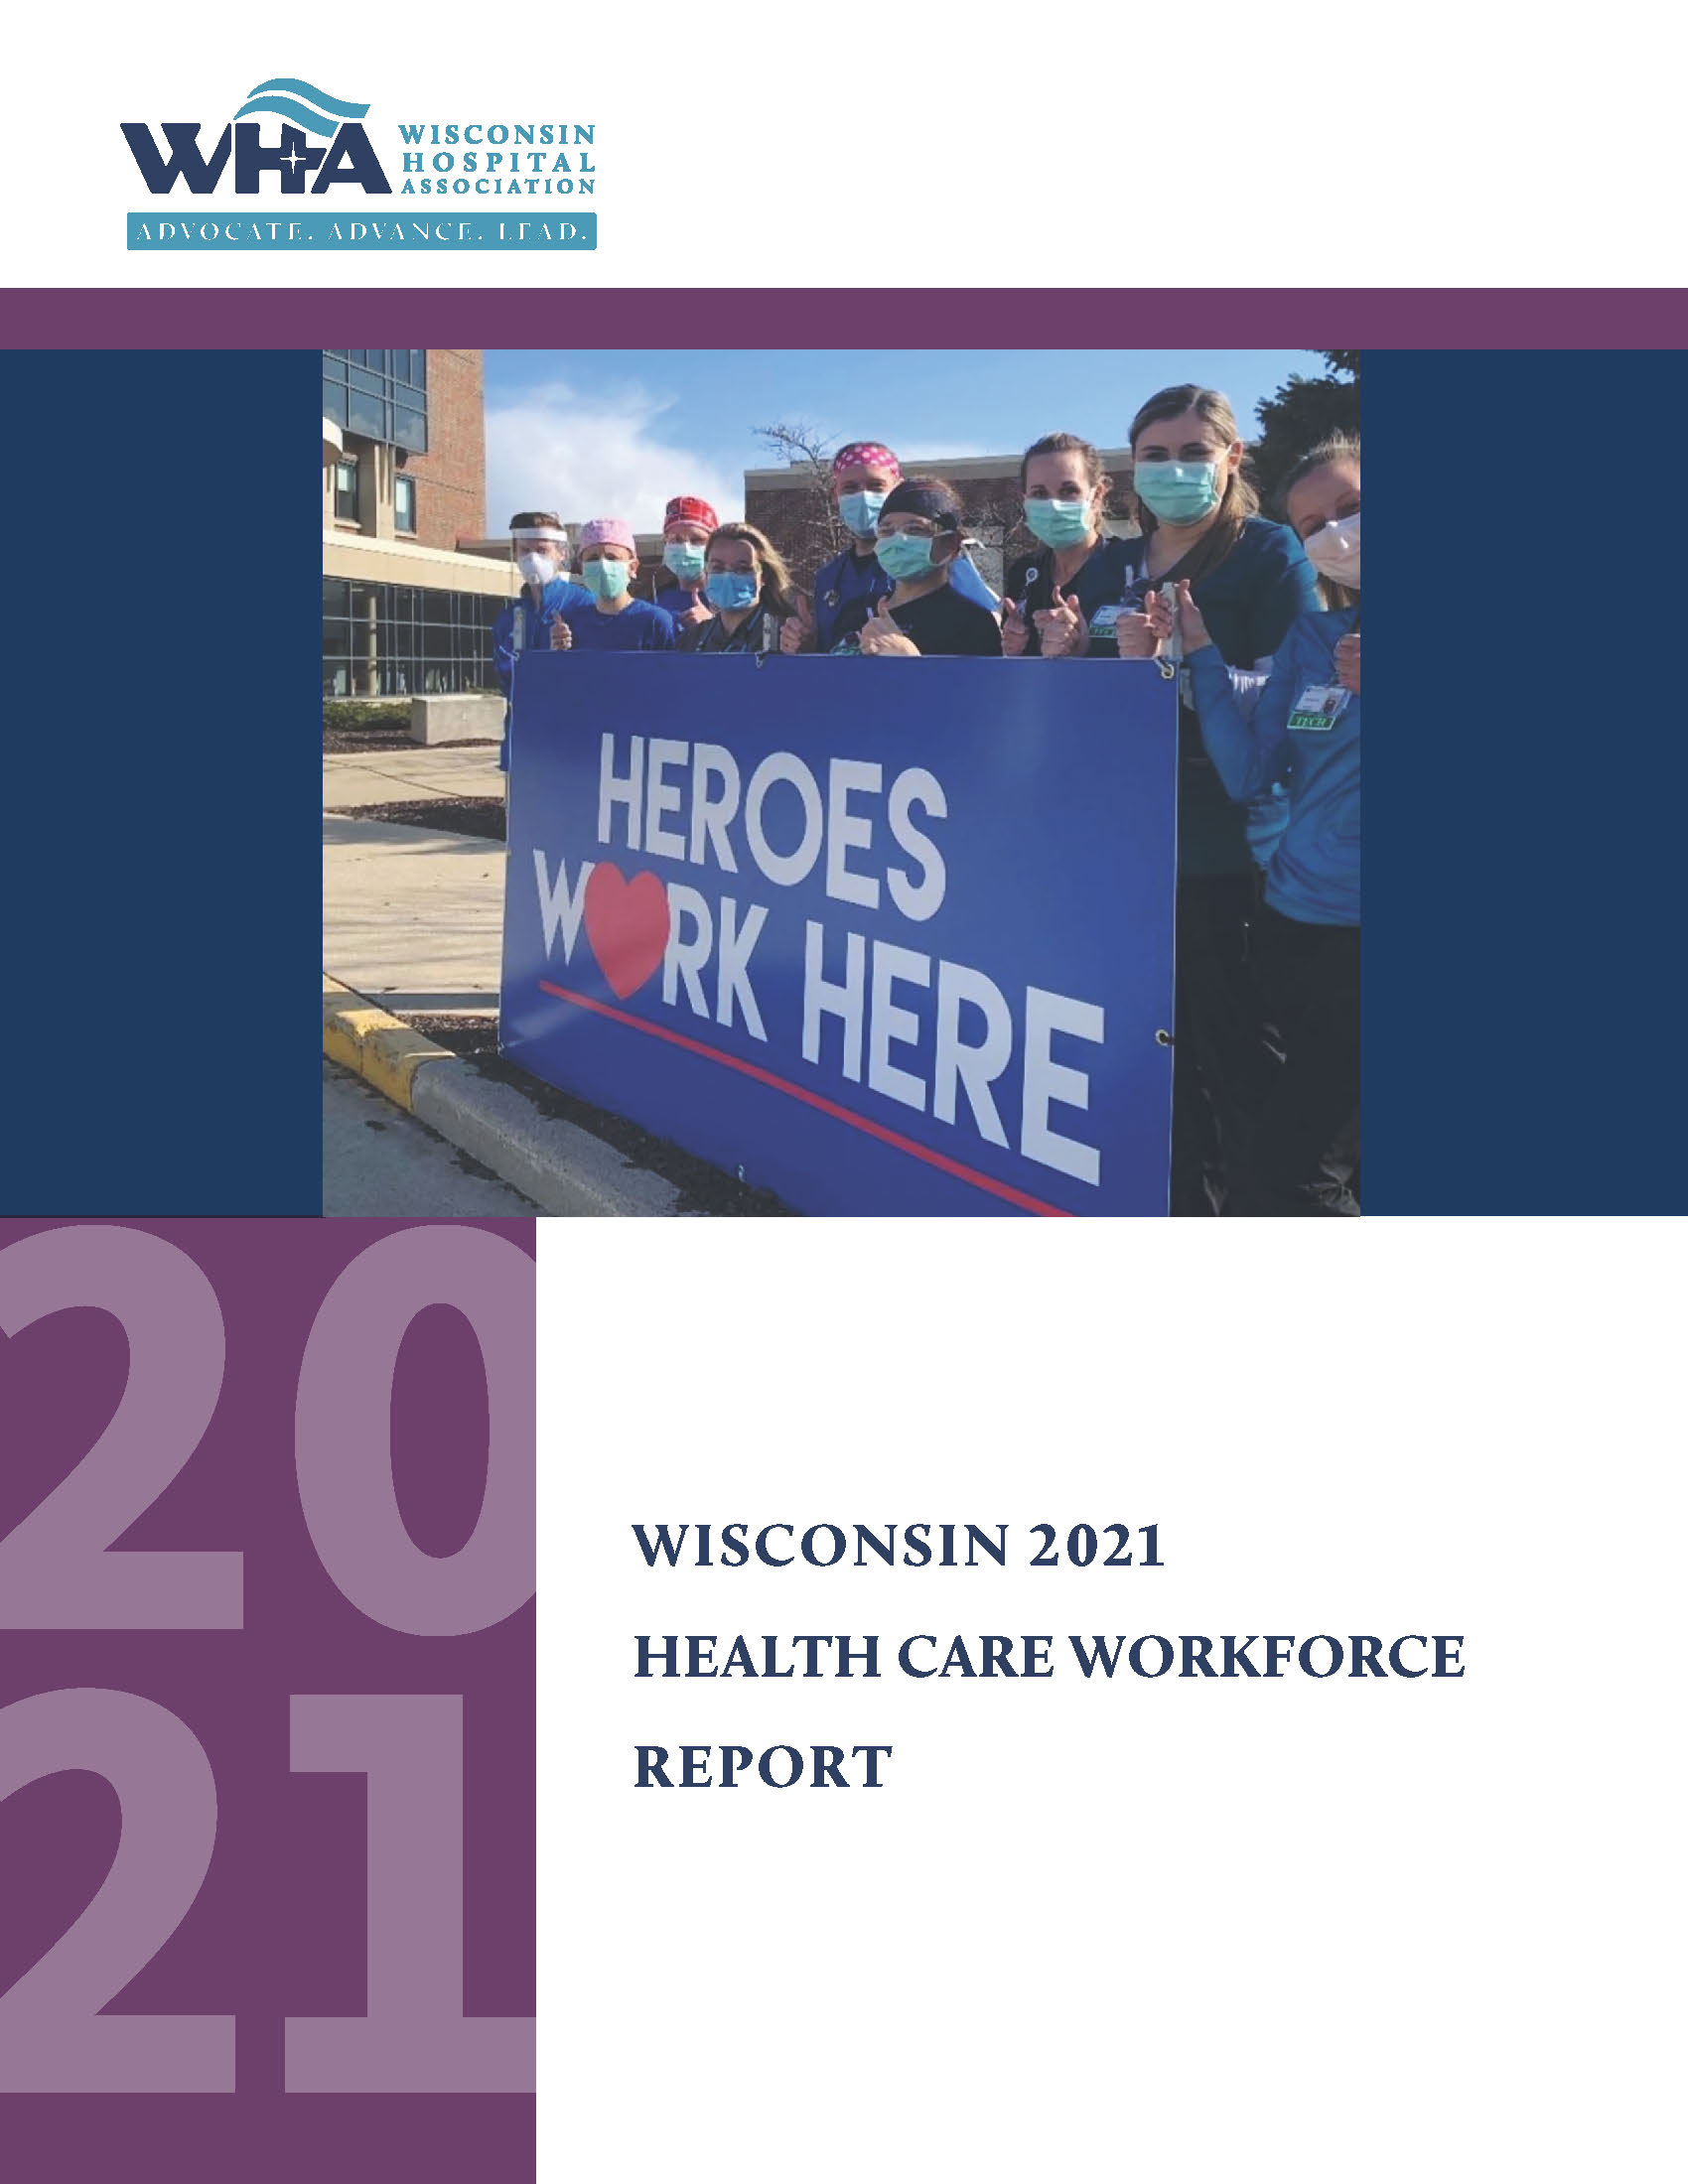 Workforce Report